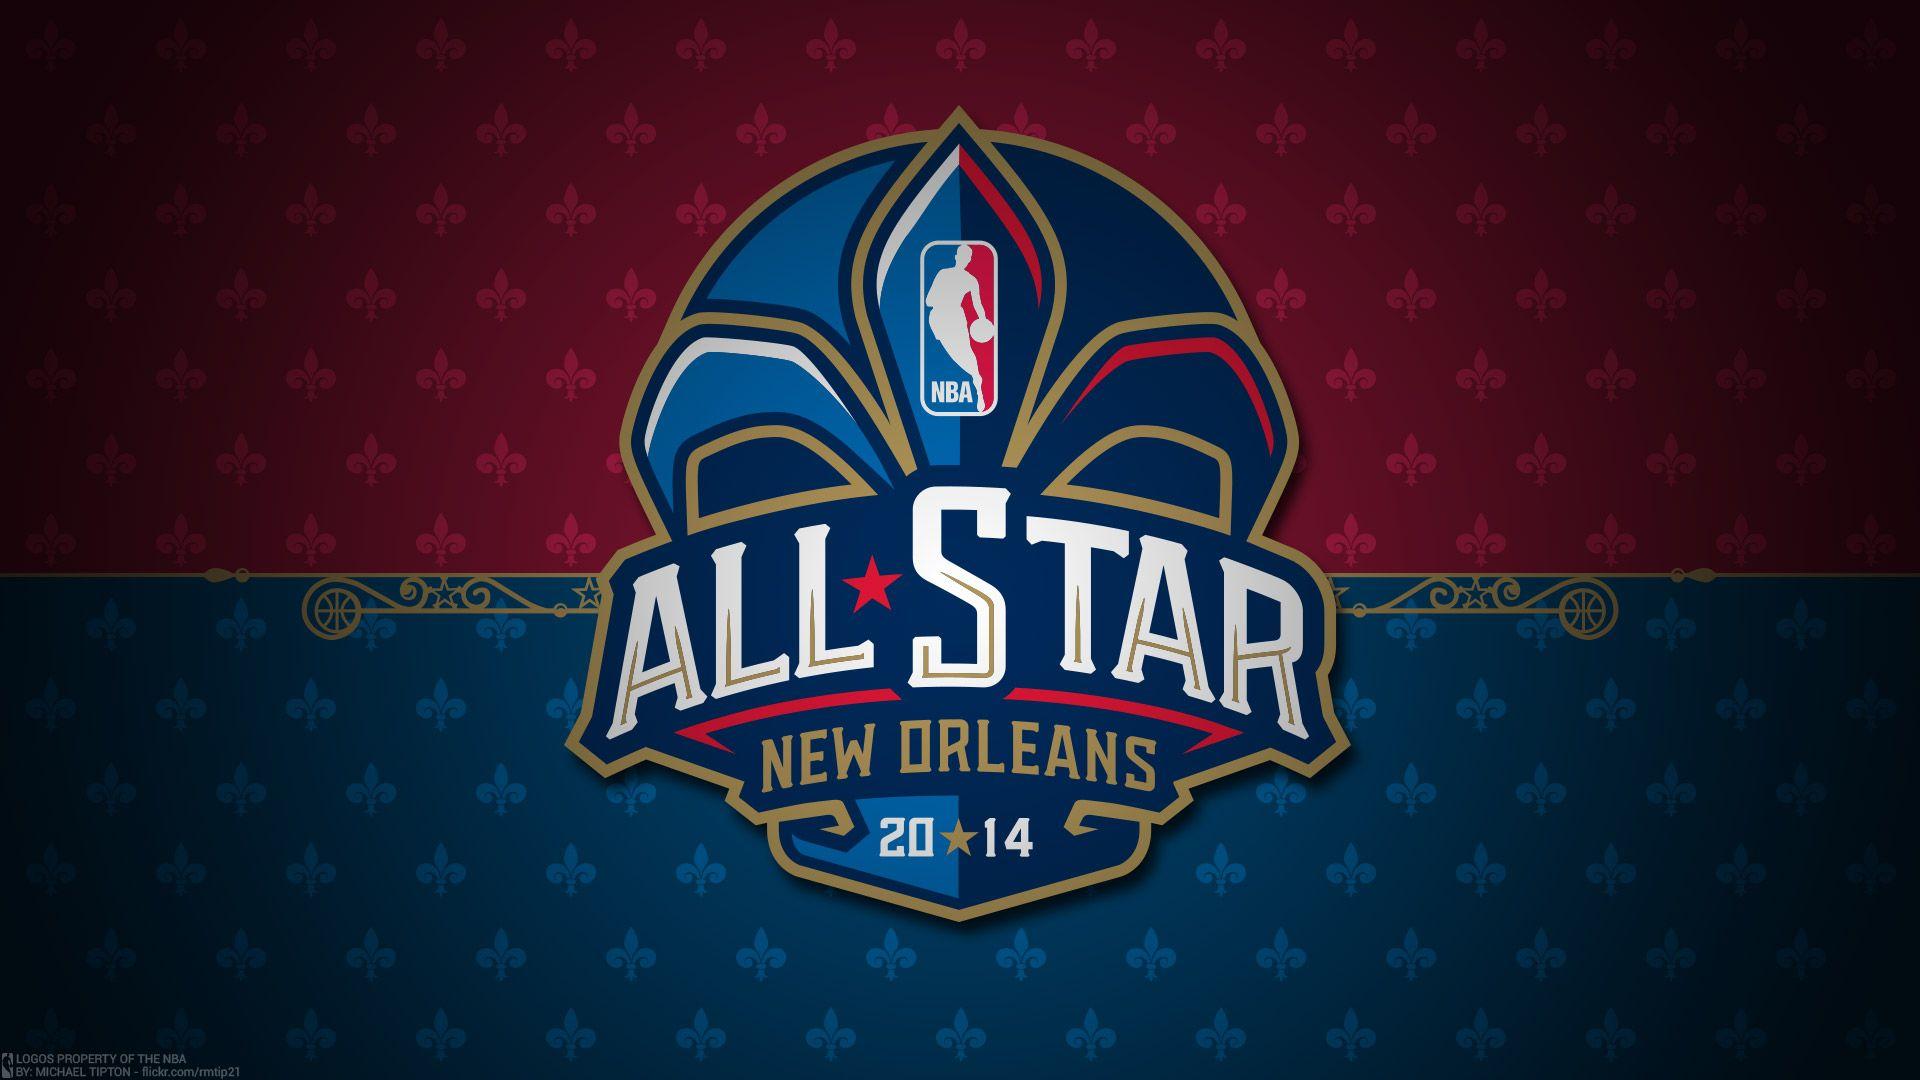 NBA All Star Wallpaper. Basketball Wallpaper At